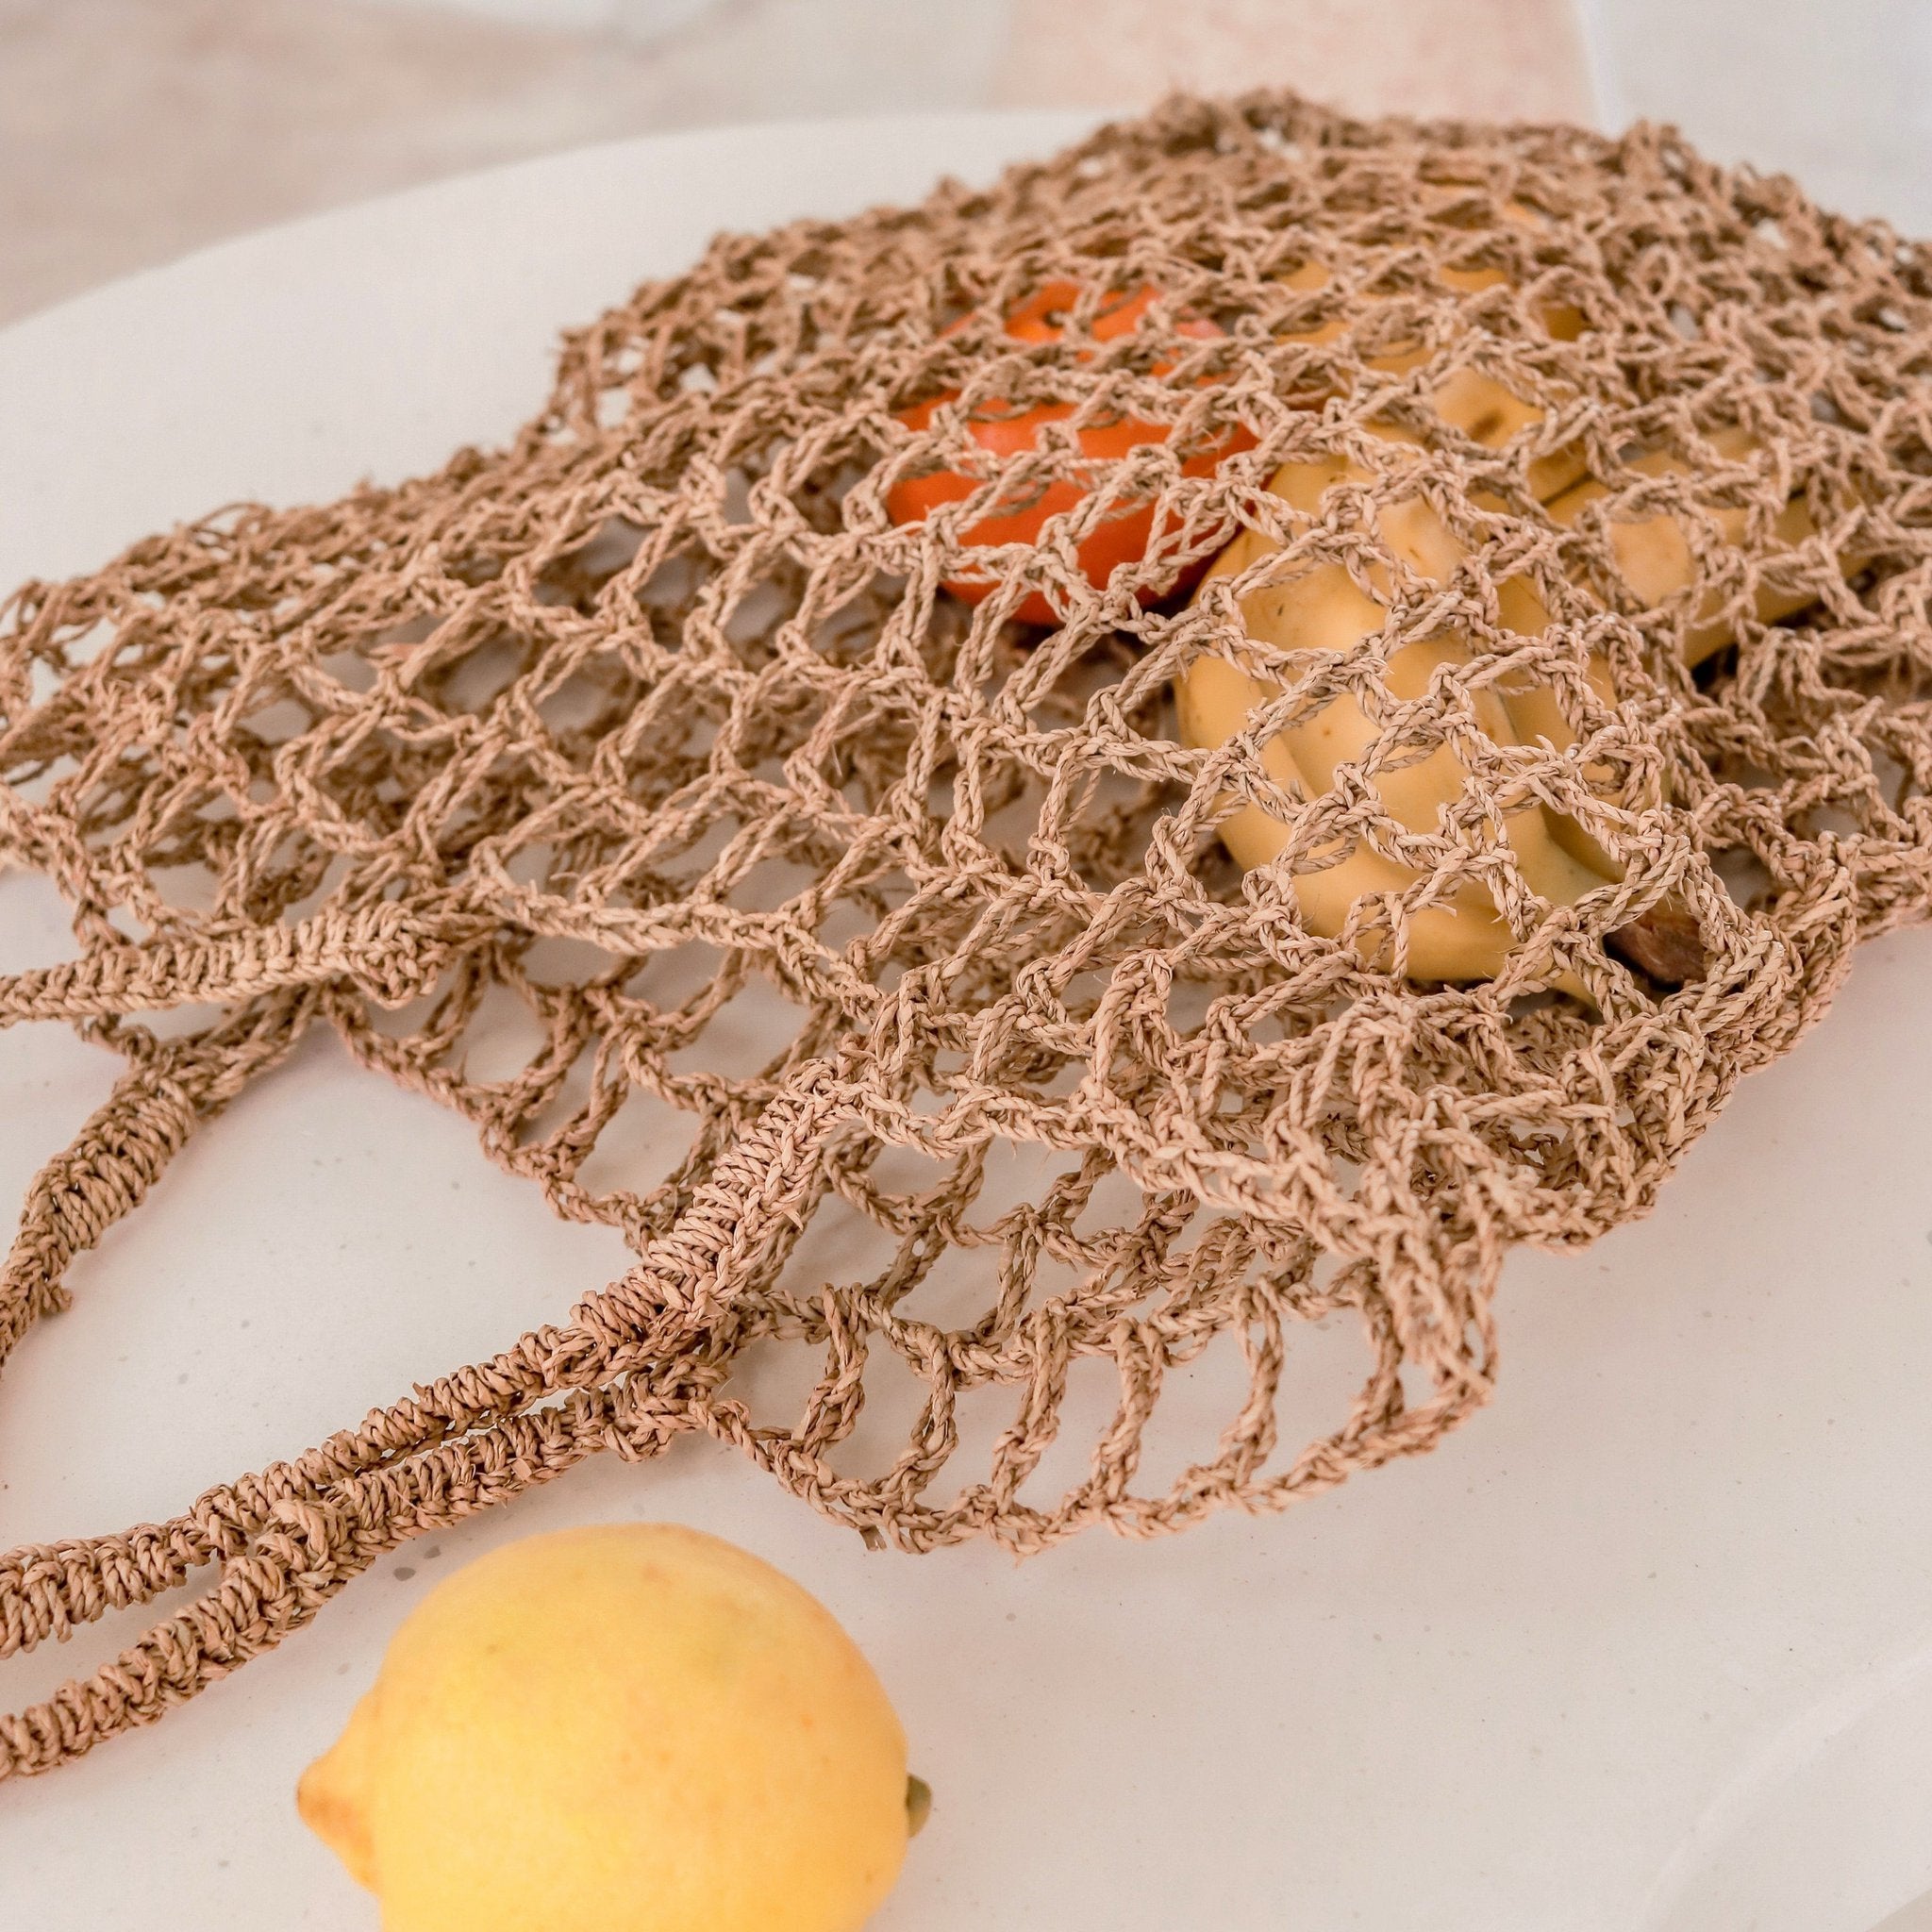 Raffia String Bag | Handwoven Reusable Grocery Bag CANANG